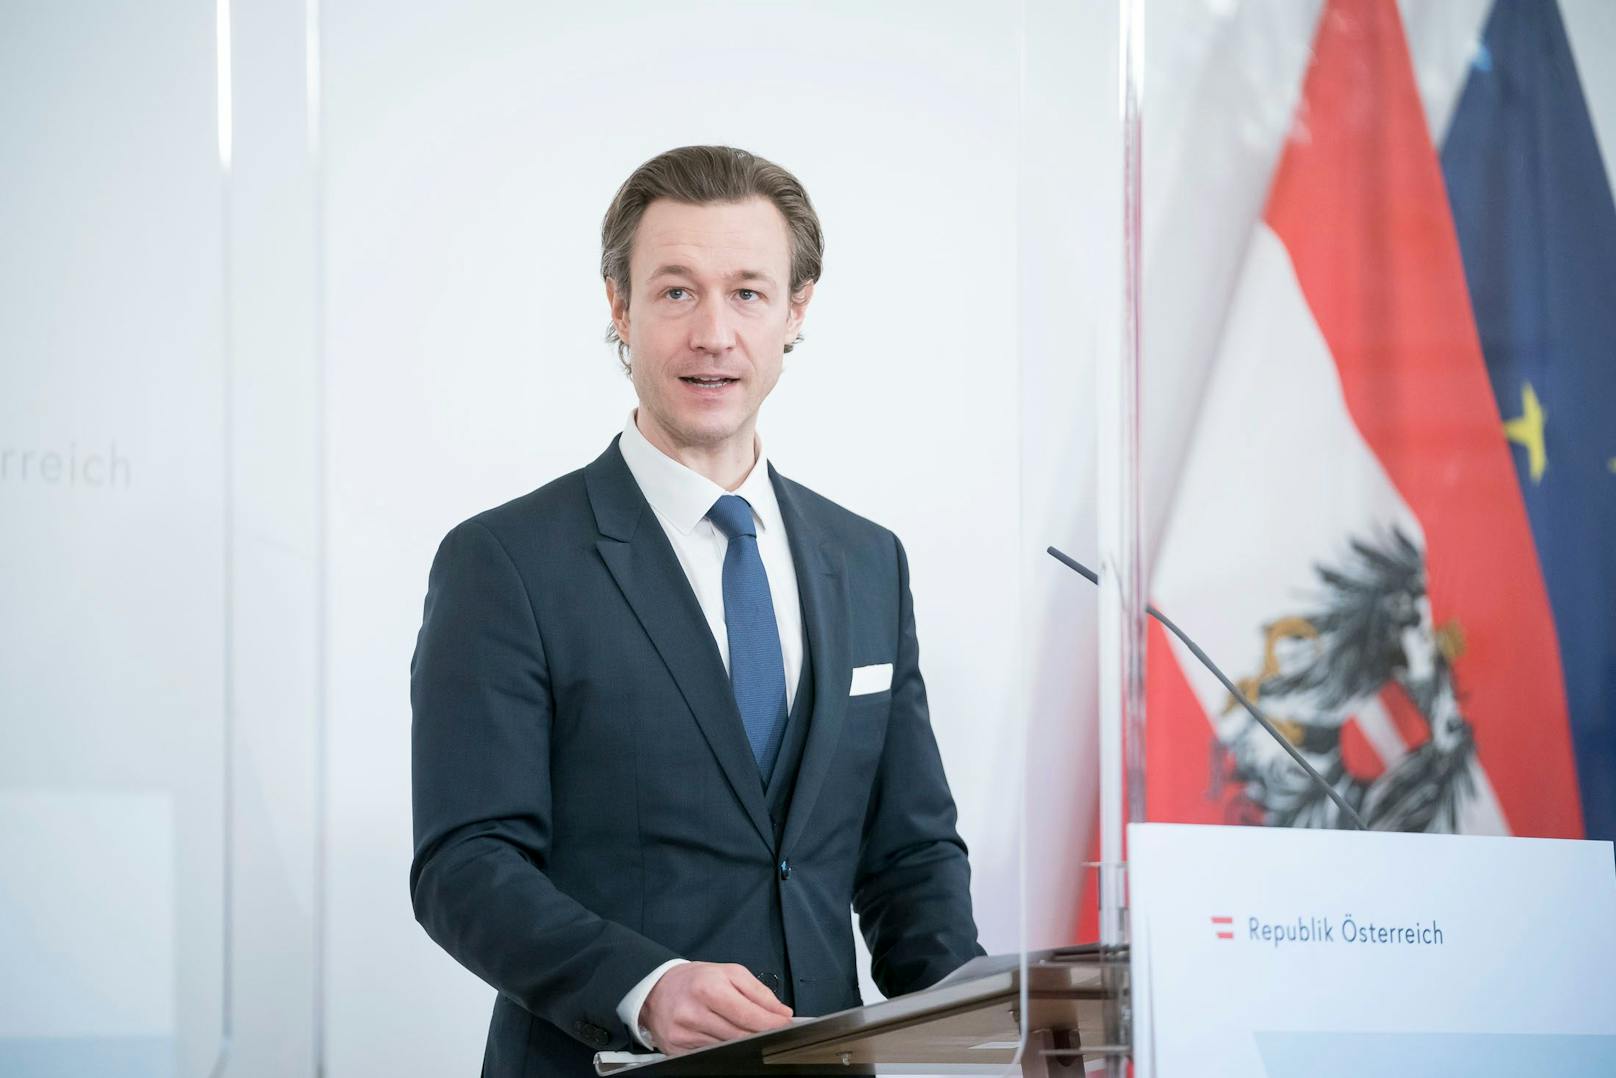 ÖVP stellt Justiz 27 Fragen zu Blümel-Staatsanwälten